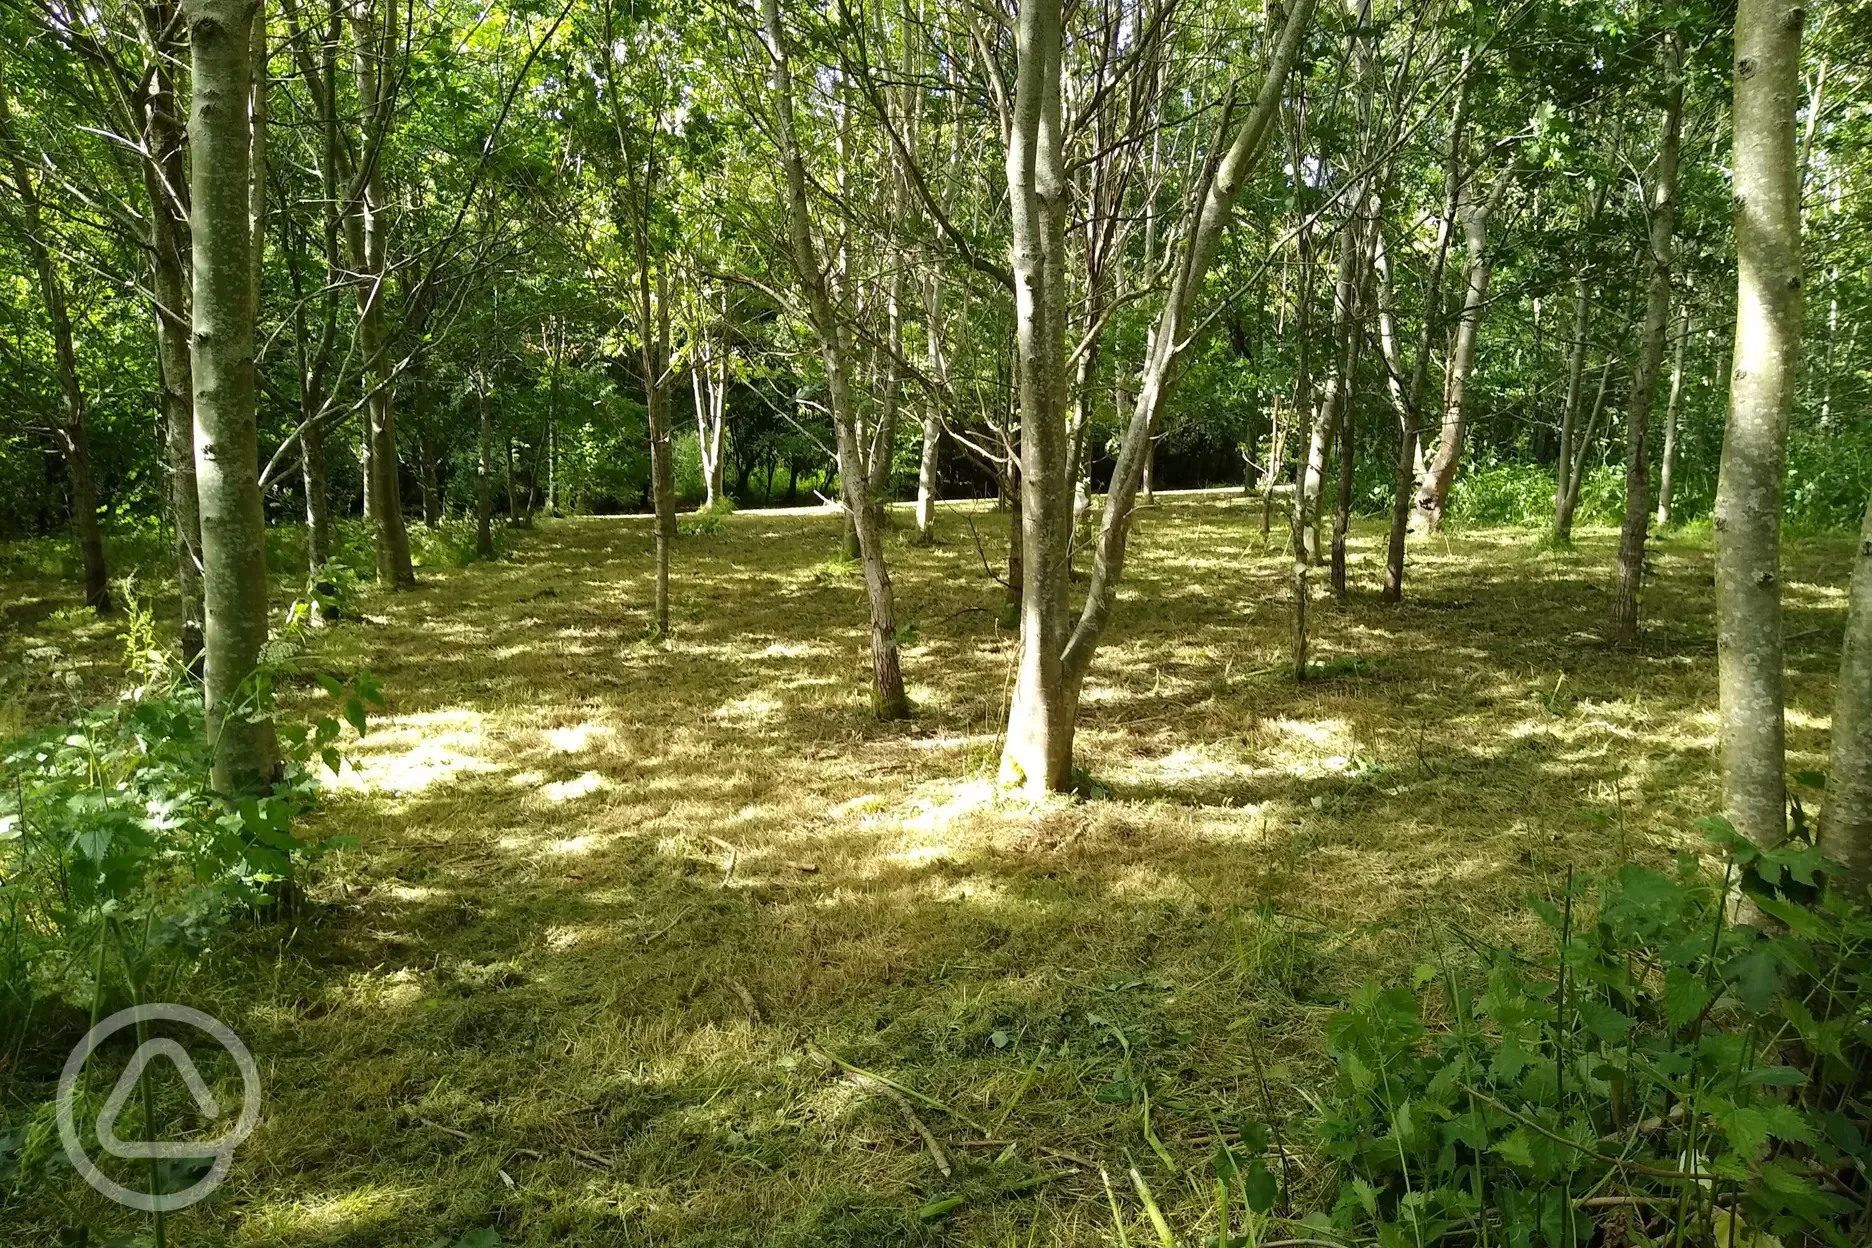 Woodland camp area